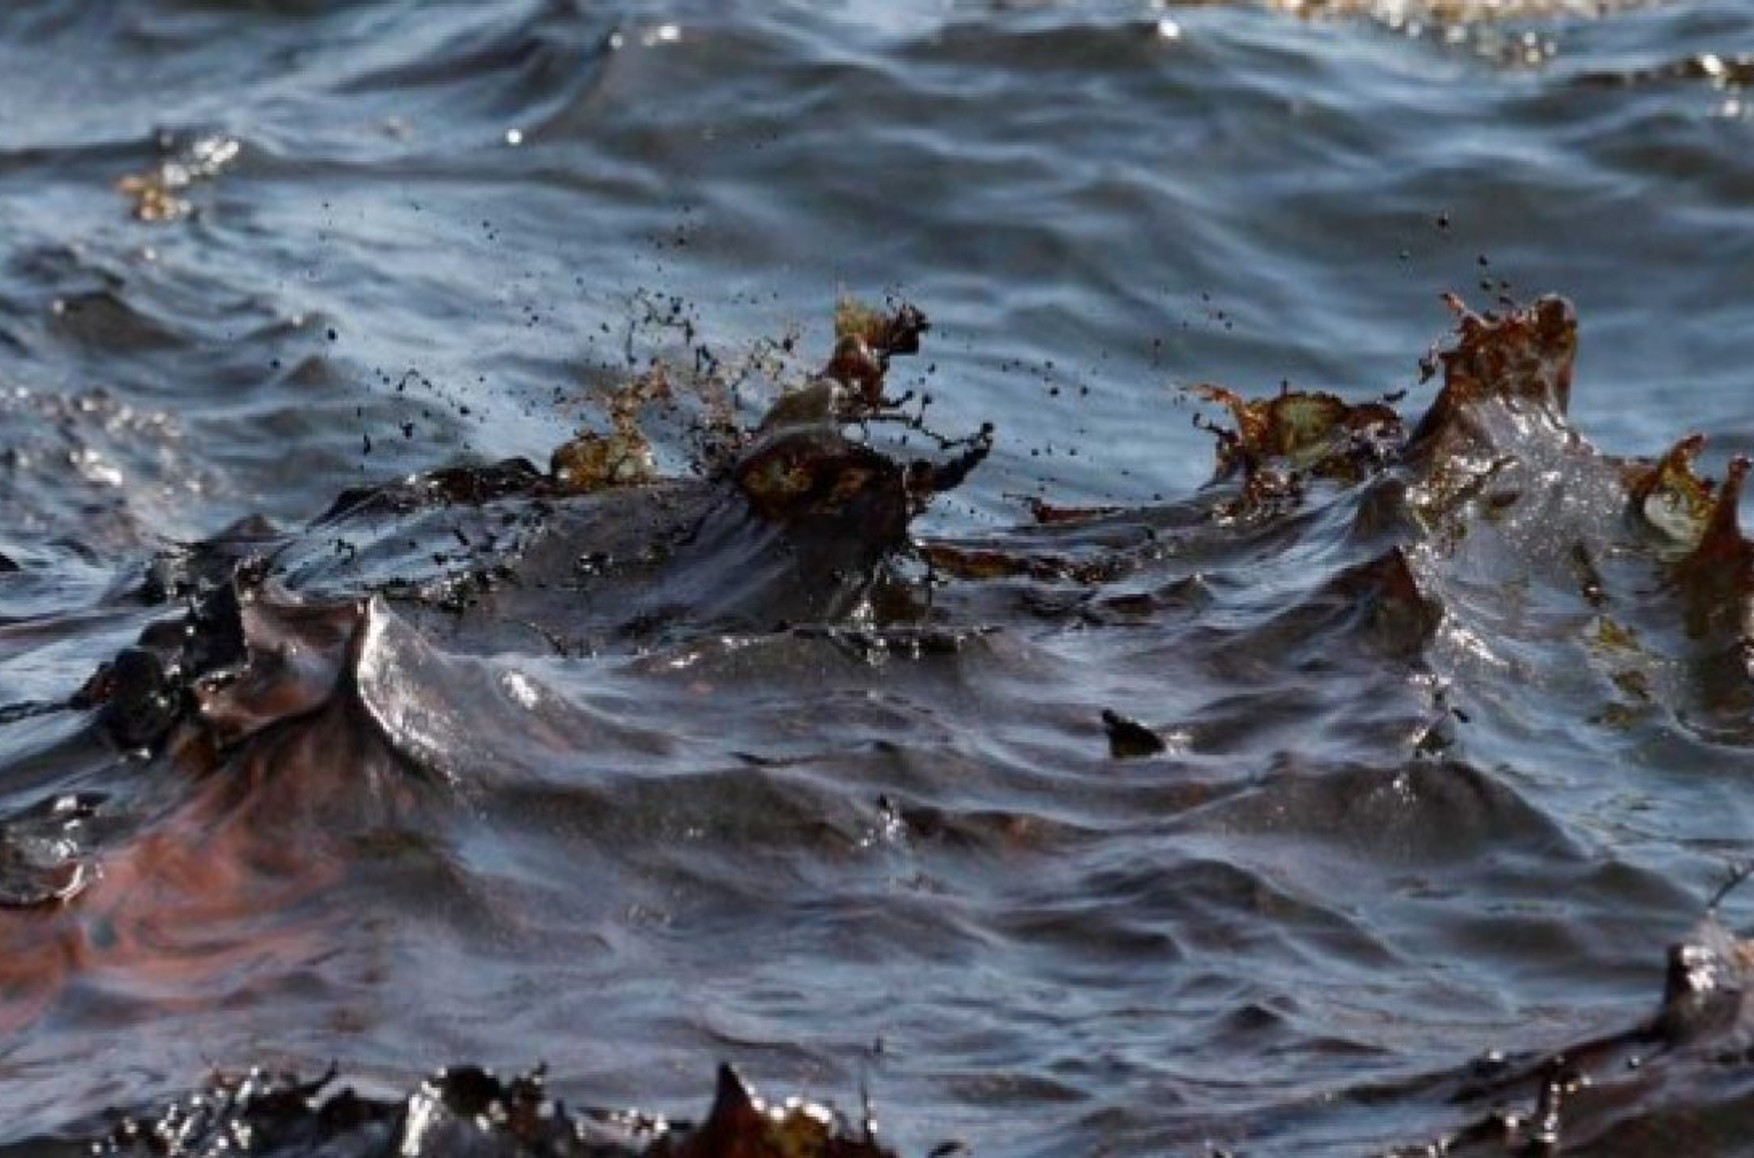 «Розлив нафти в Чорному морі від початку був дуже великий, а тепер спрацював найгірший сценарій» - еколог